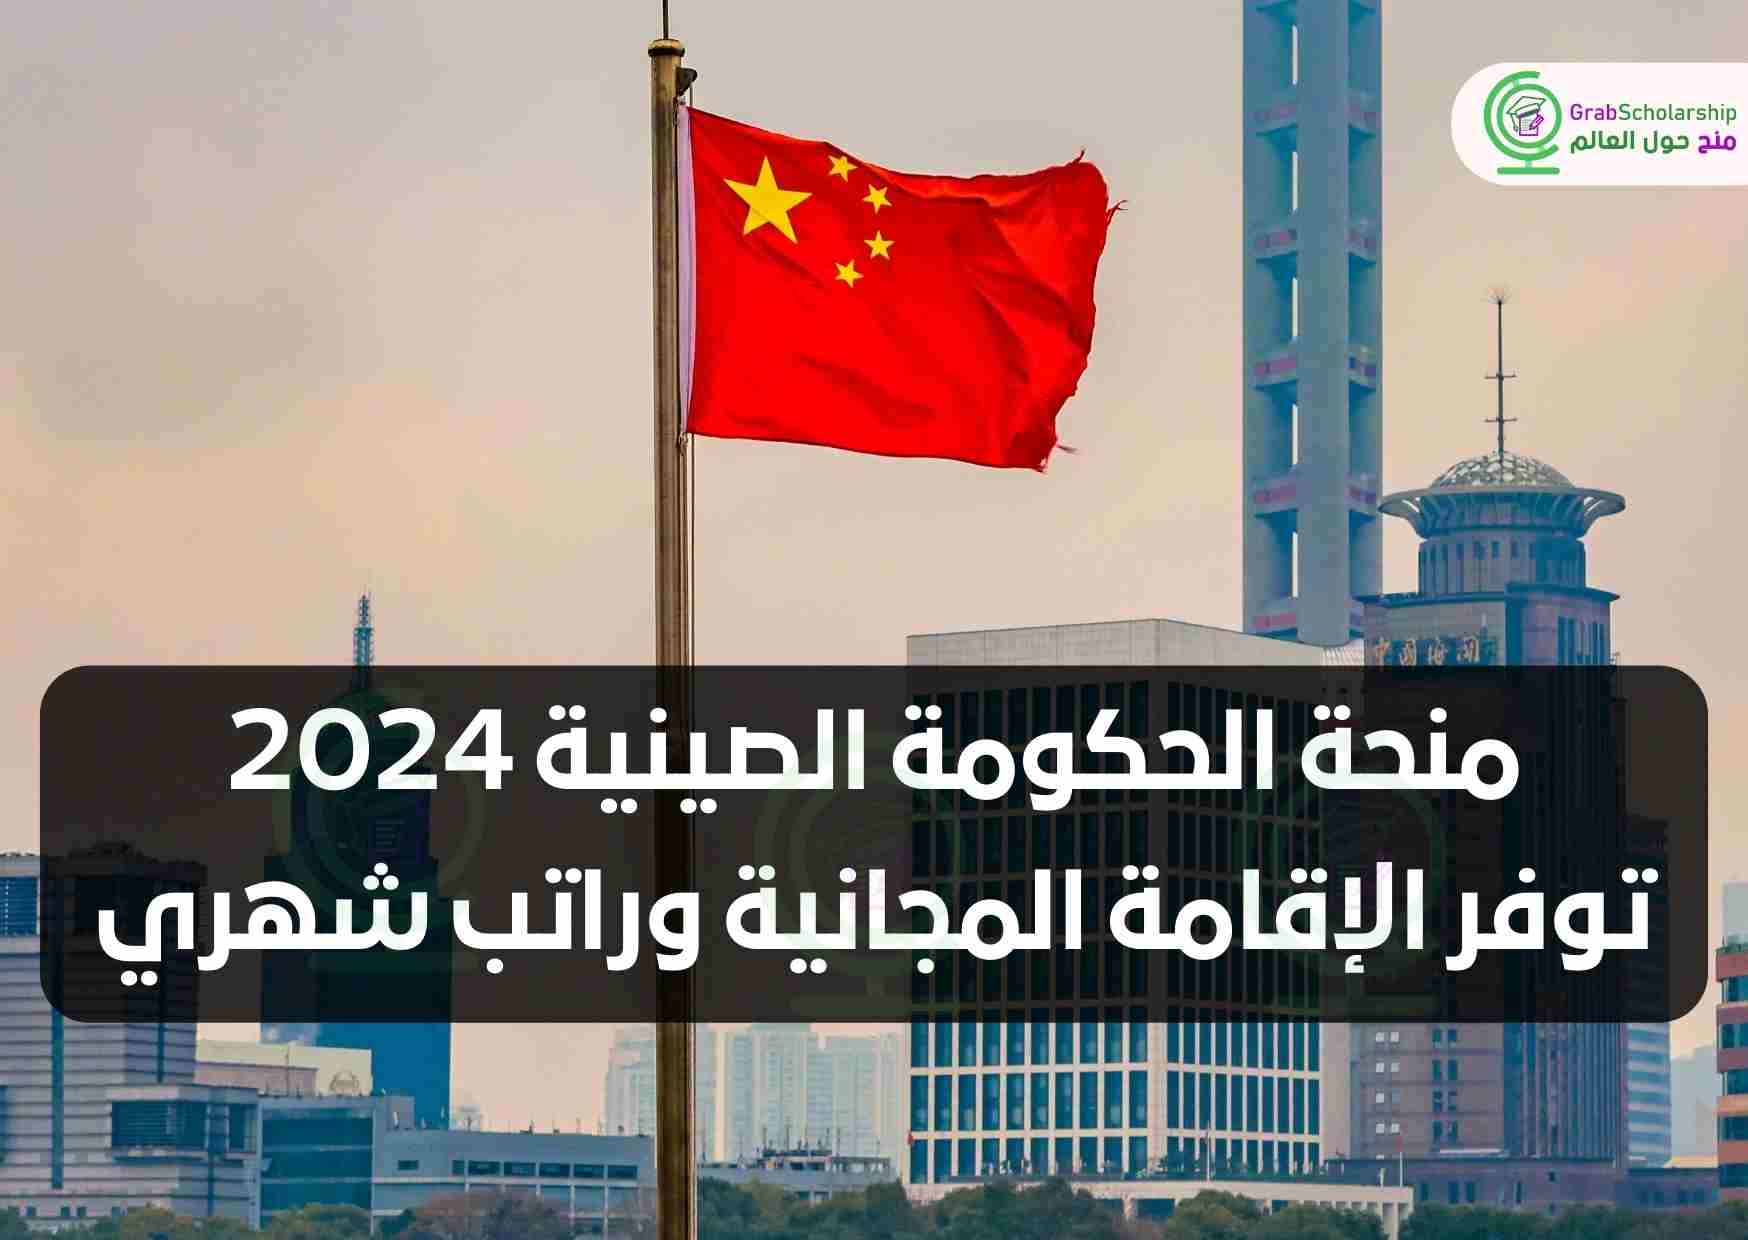 منحة الحكومة الصينية 2024 توفر الإقامة المجانية وراتب شهري